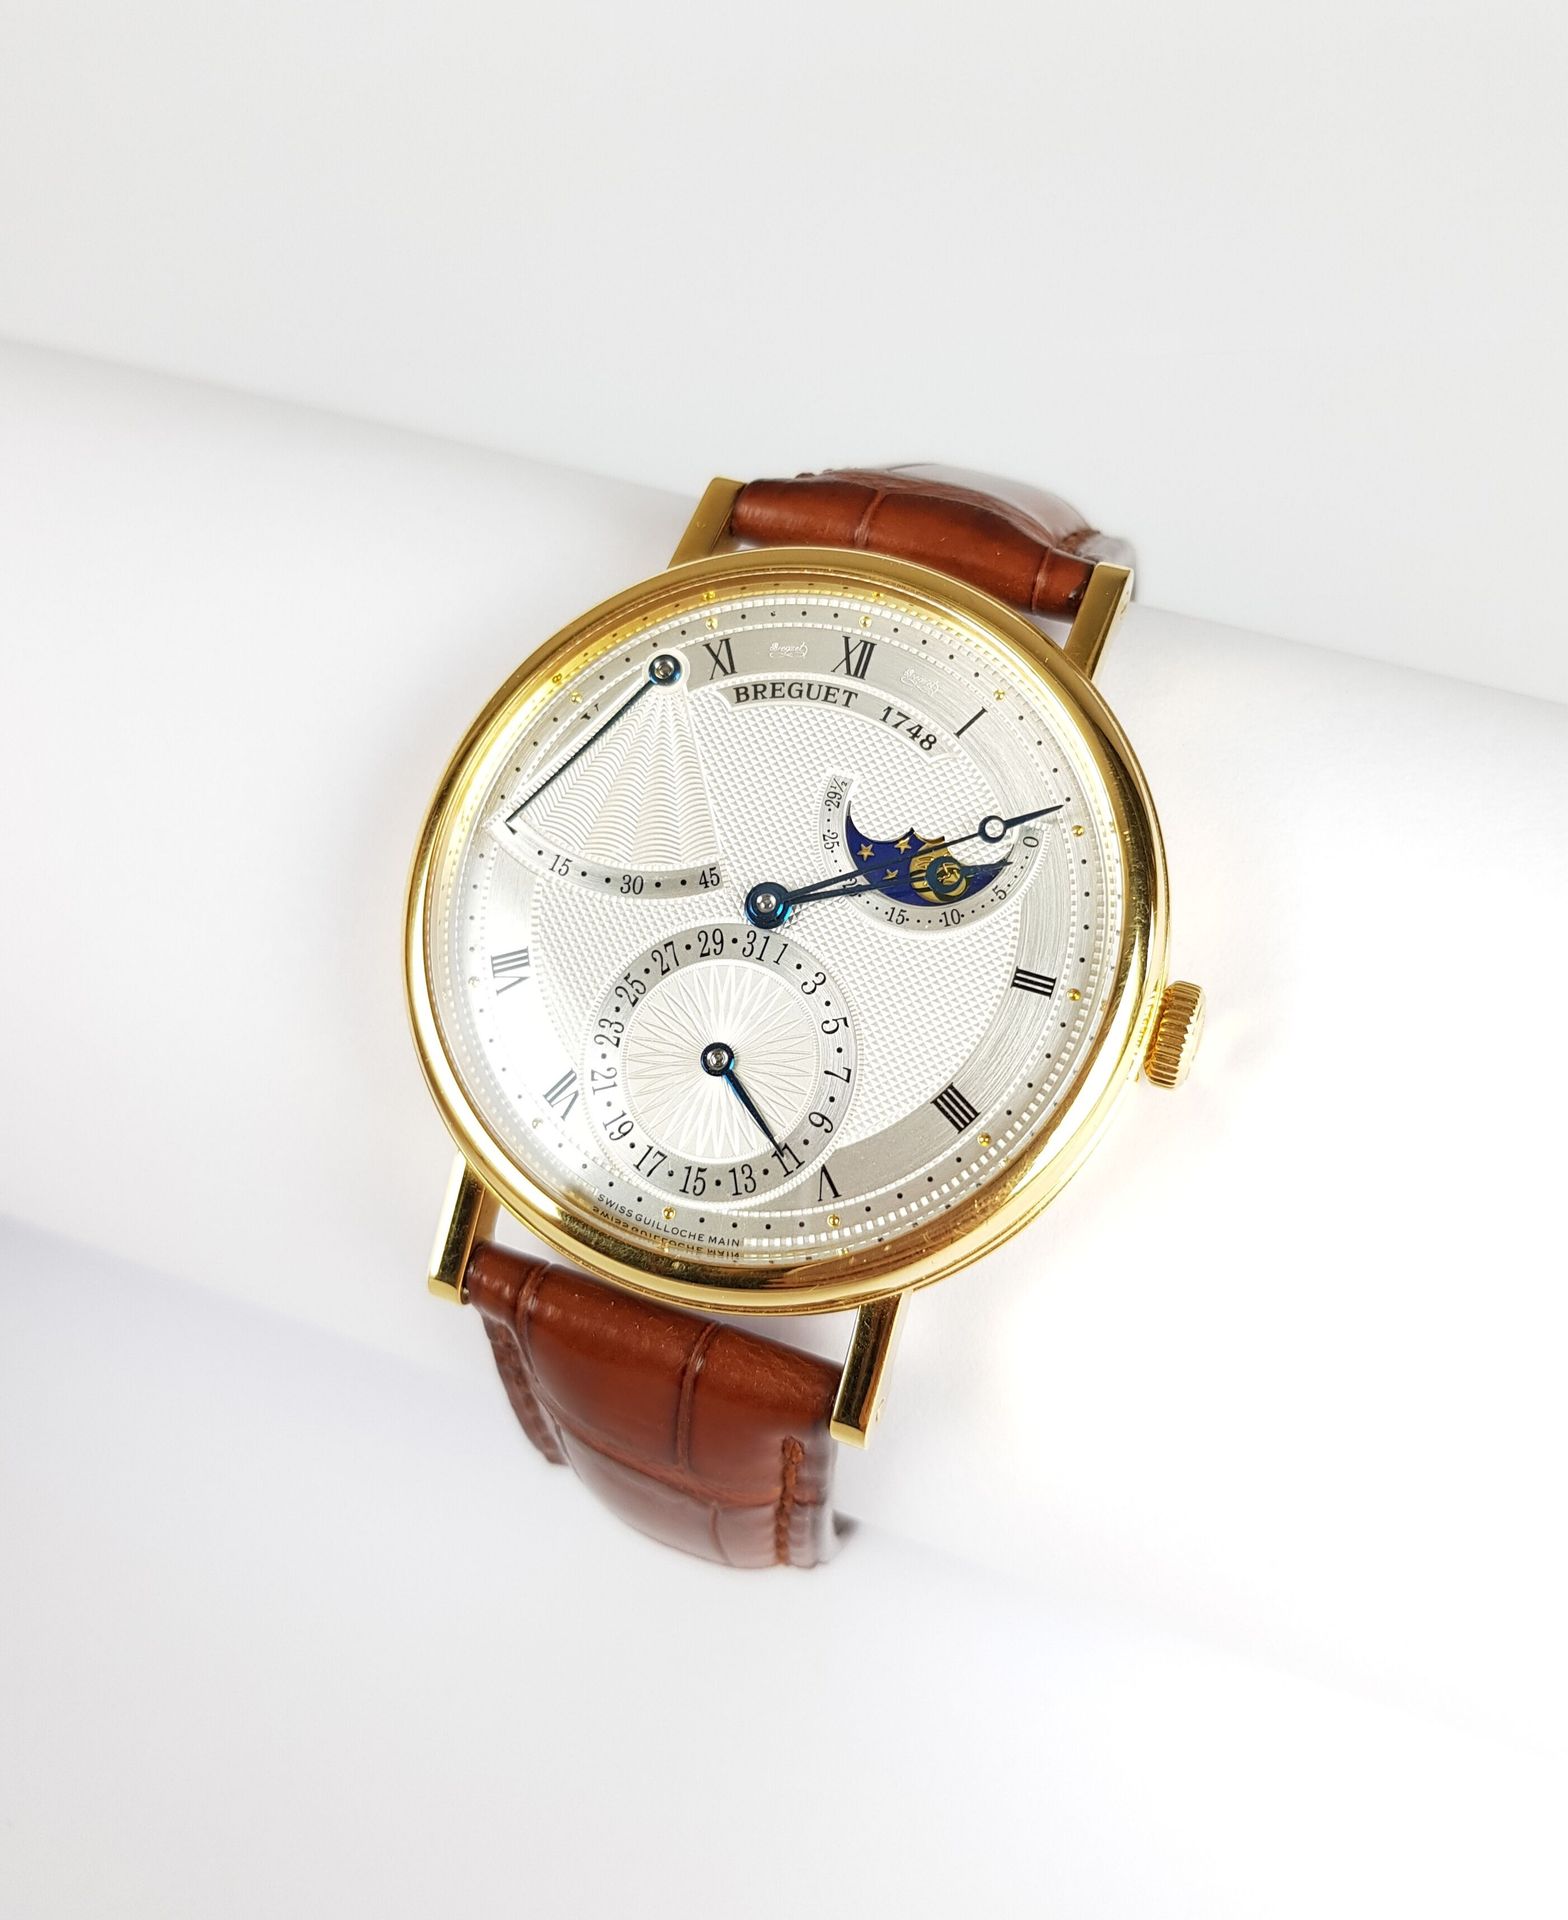 Null Zum Verkauf angeboten: 9.000 €.

BREGUET

Ewiger Kalender

Uhr aus 750 Taus&hellip;